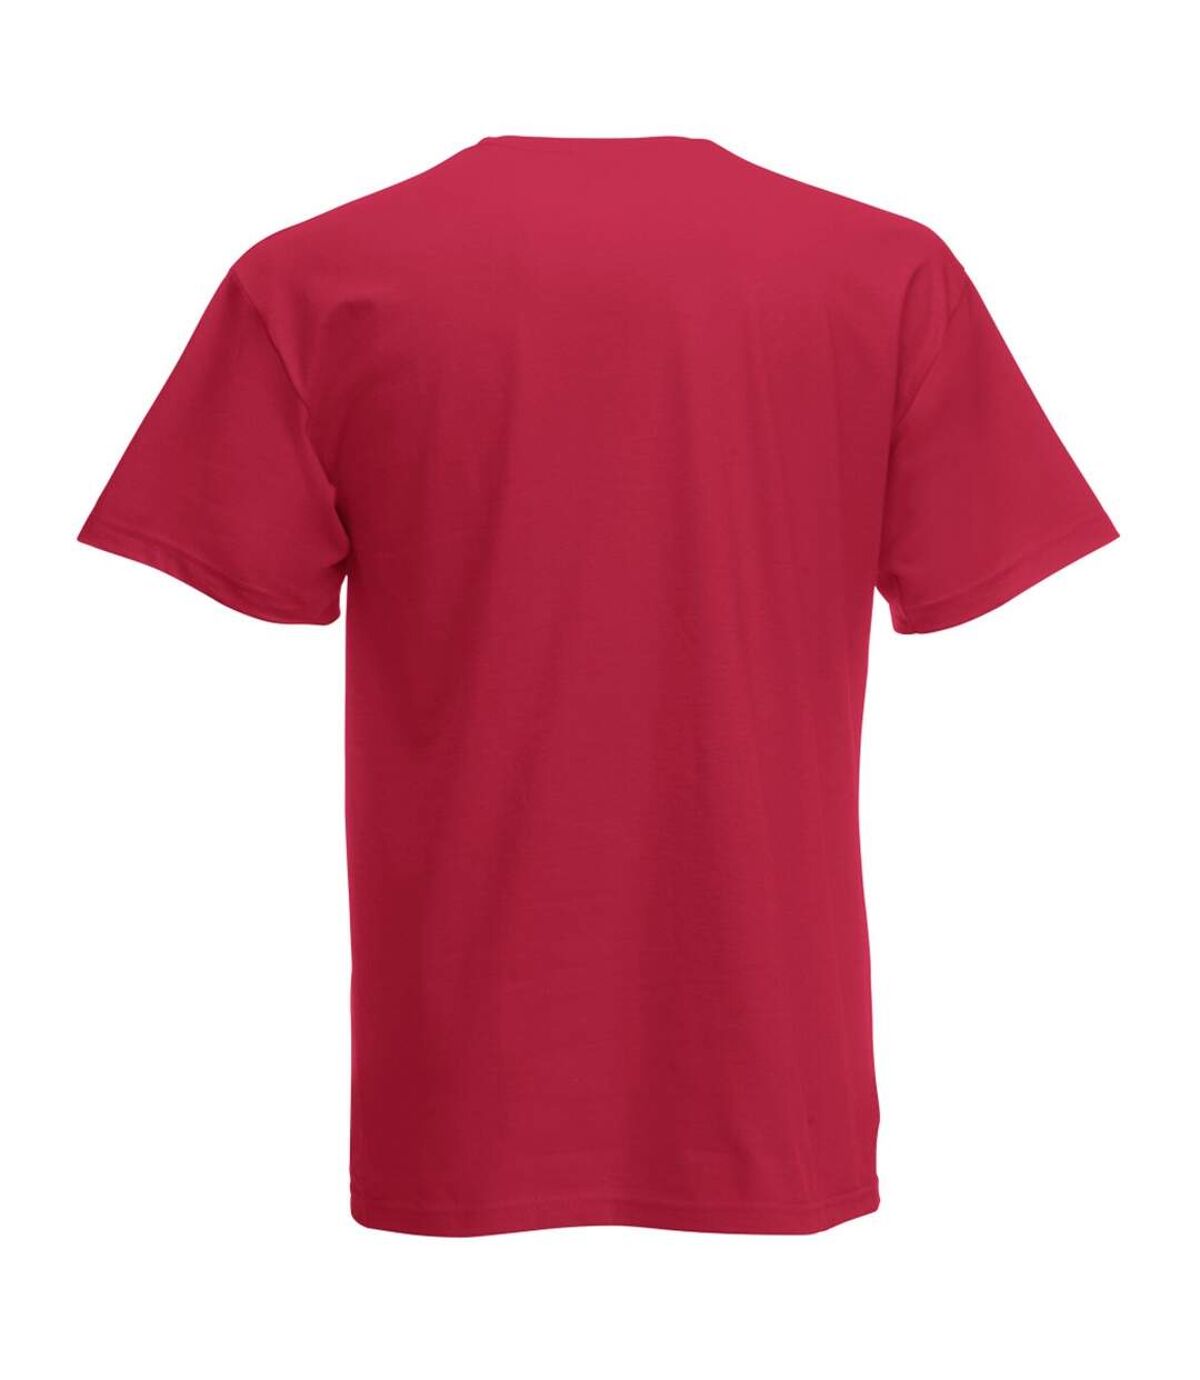 Fruit Of The Loom Mens Screen Stars Original Full Cut Short Sleeve T-Shirt (Brick Red)